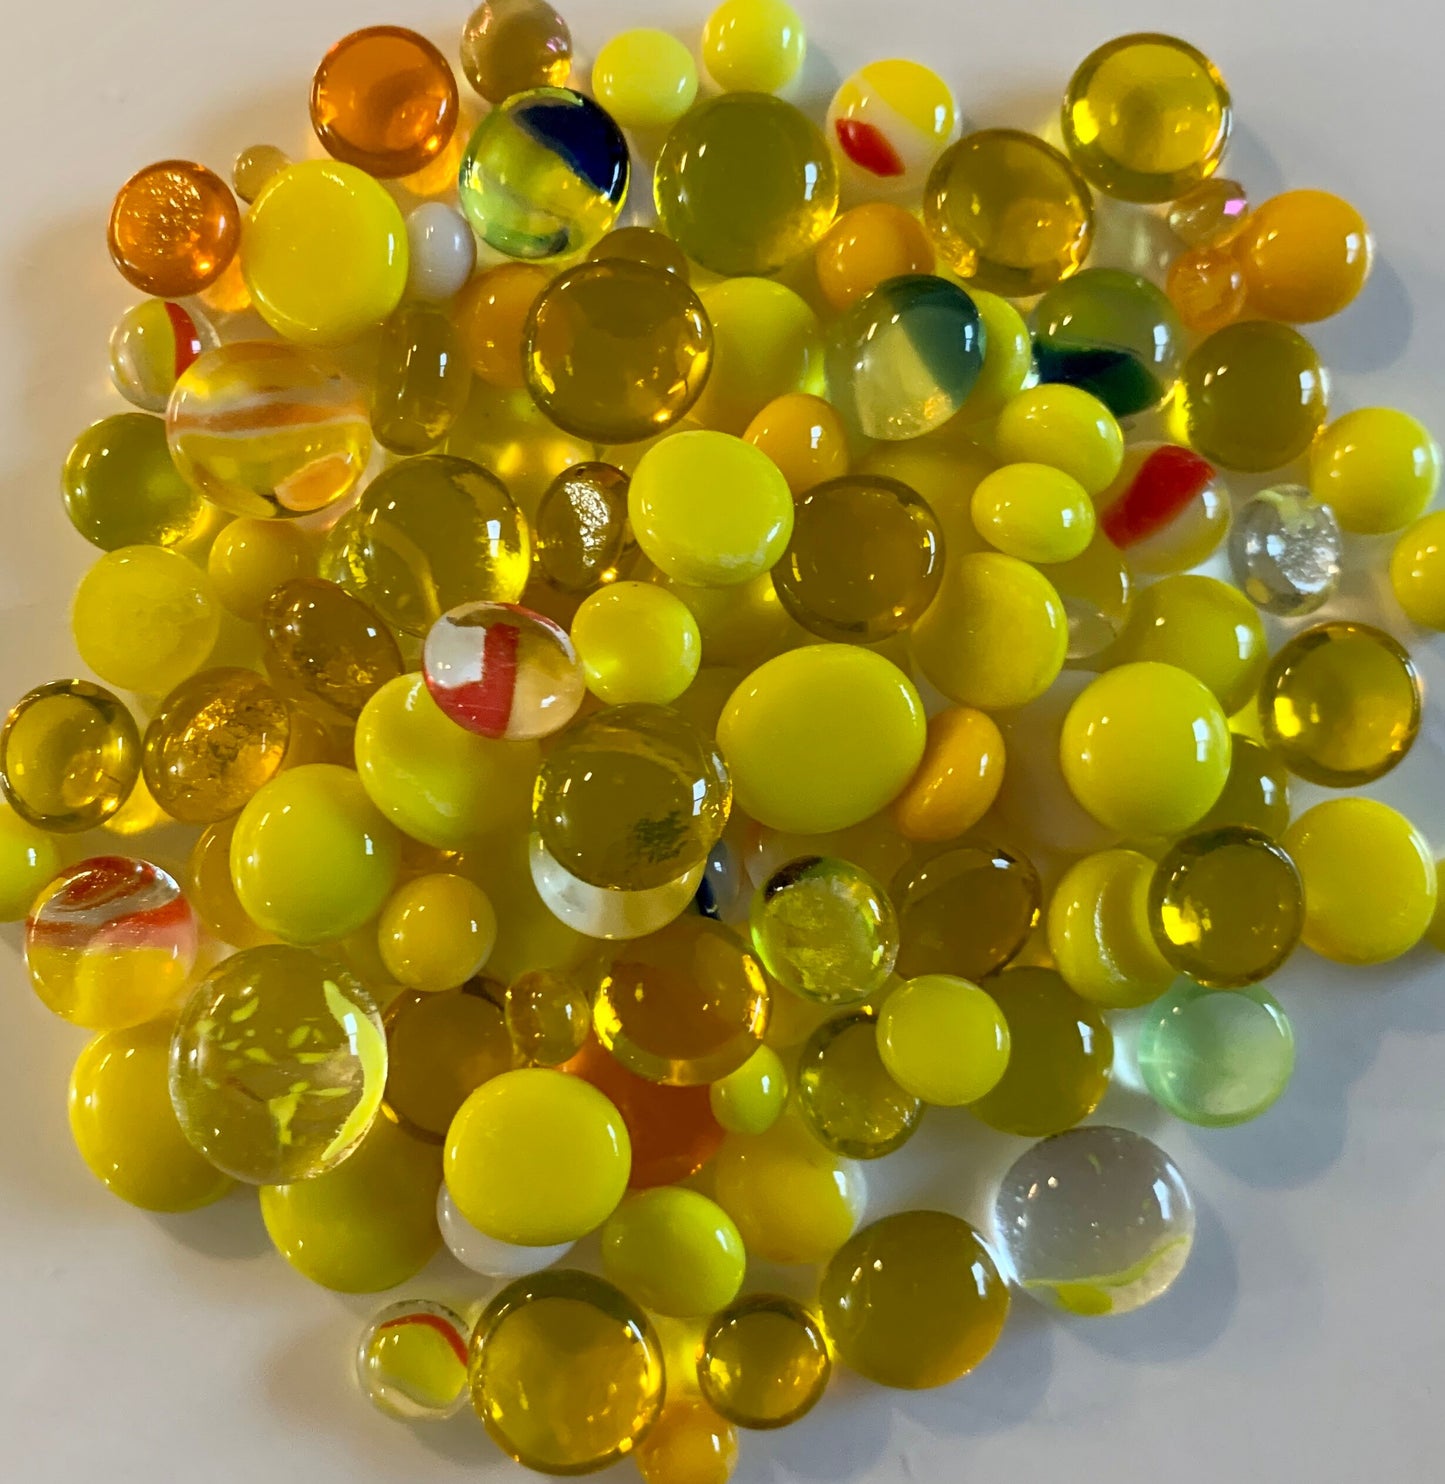 COE 96 Mix of Yellow Mosaic Glass Dots